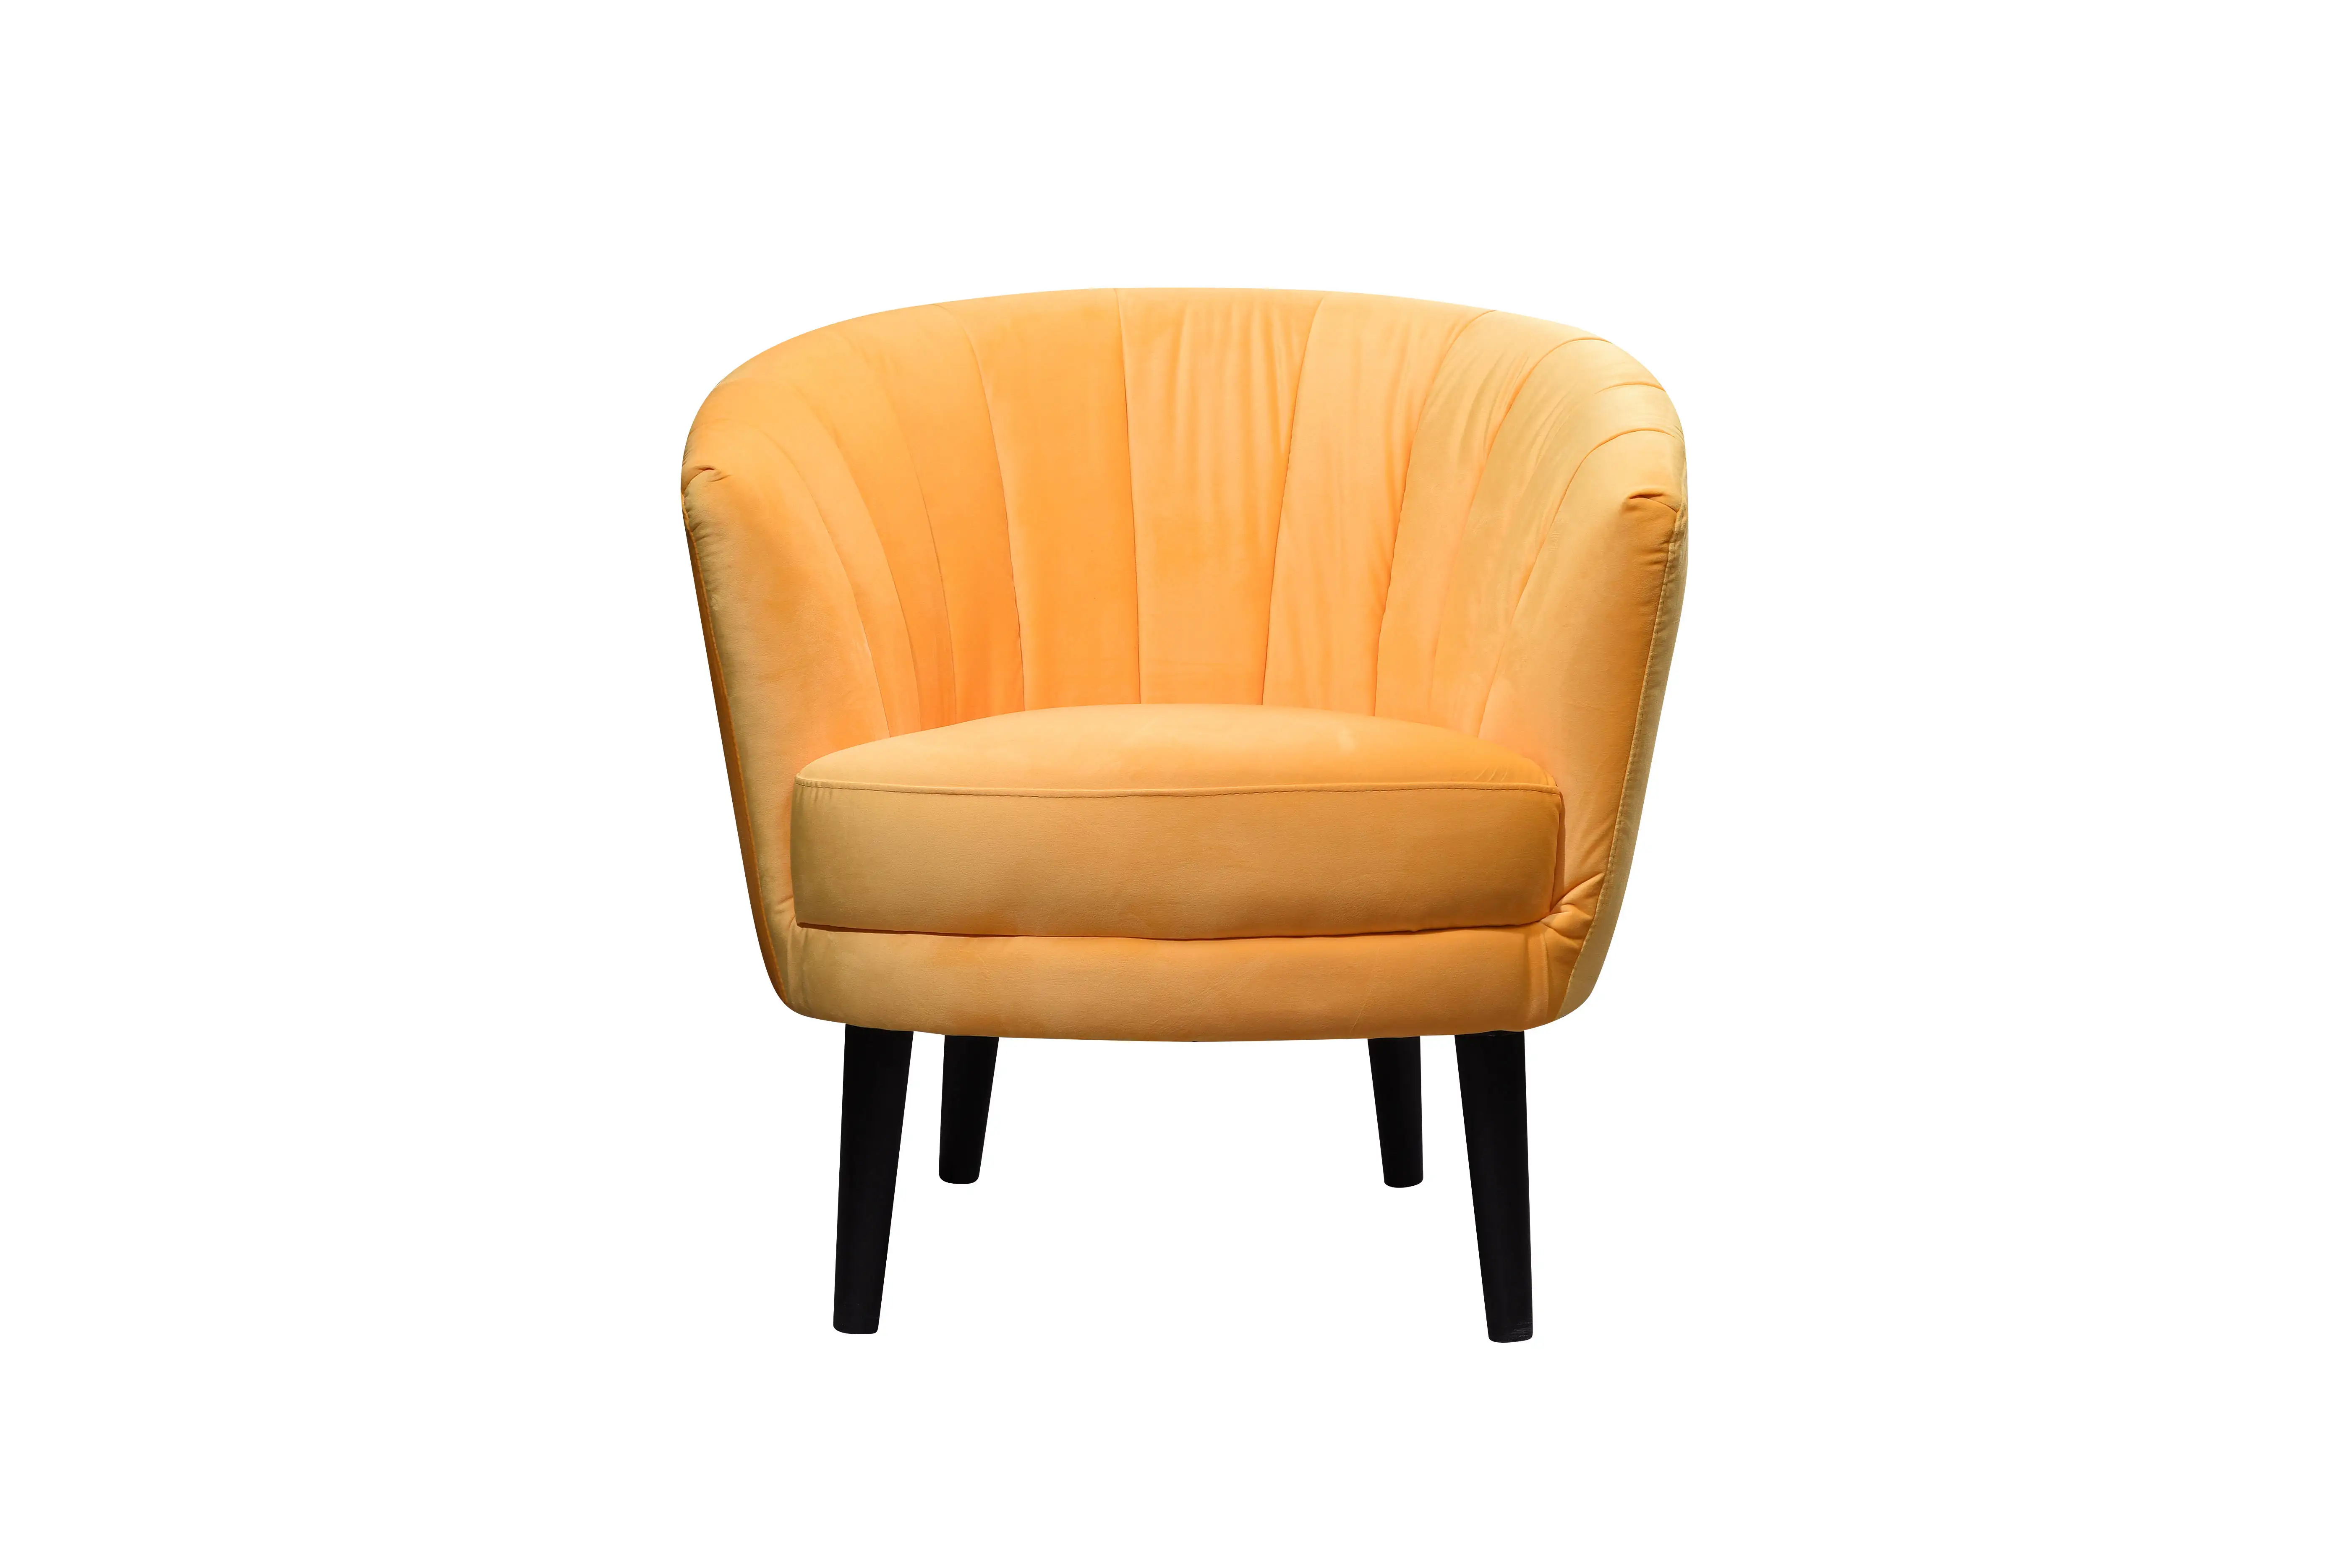 Скандинавское современное кресло-диван для гостиной 489